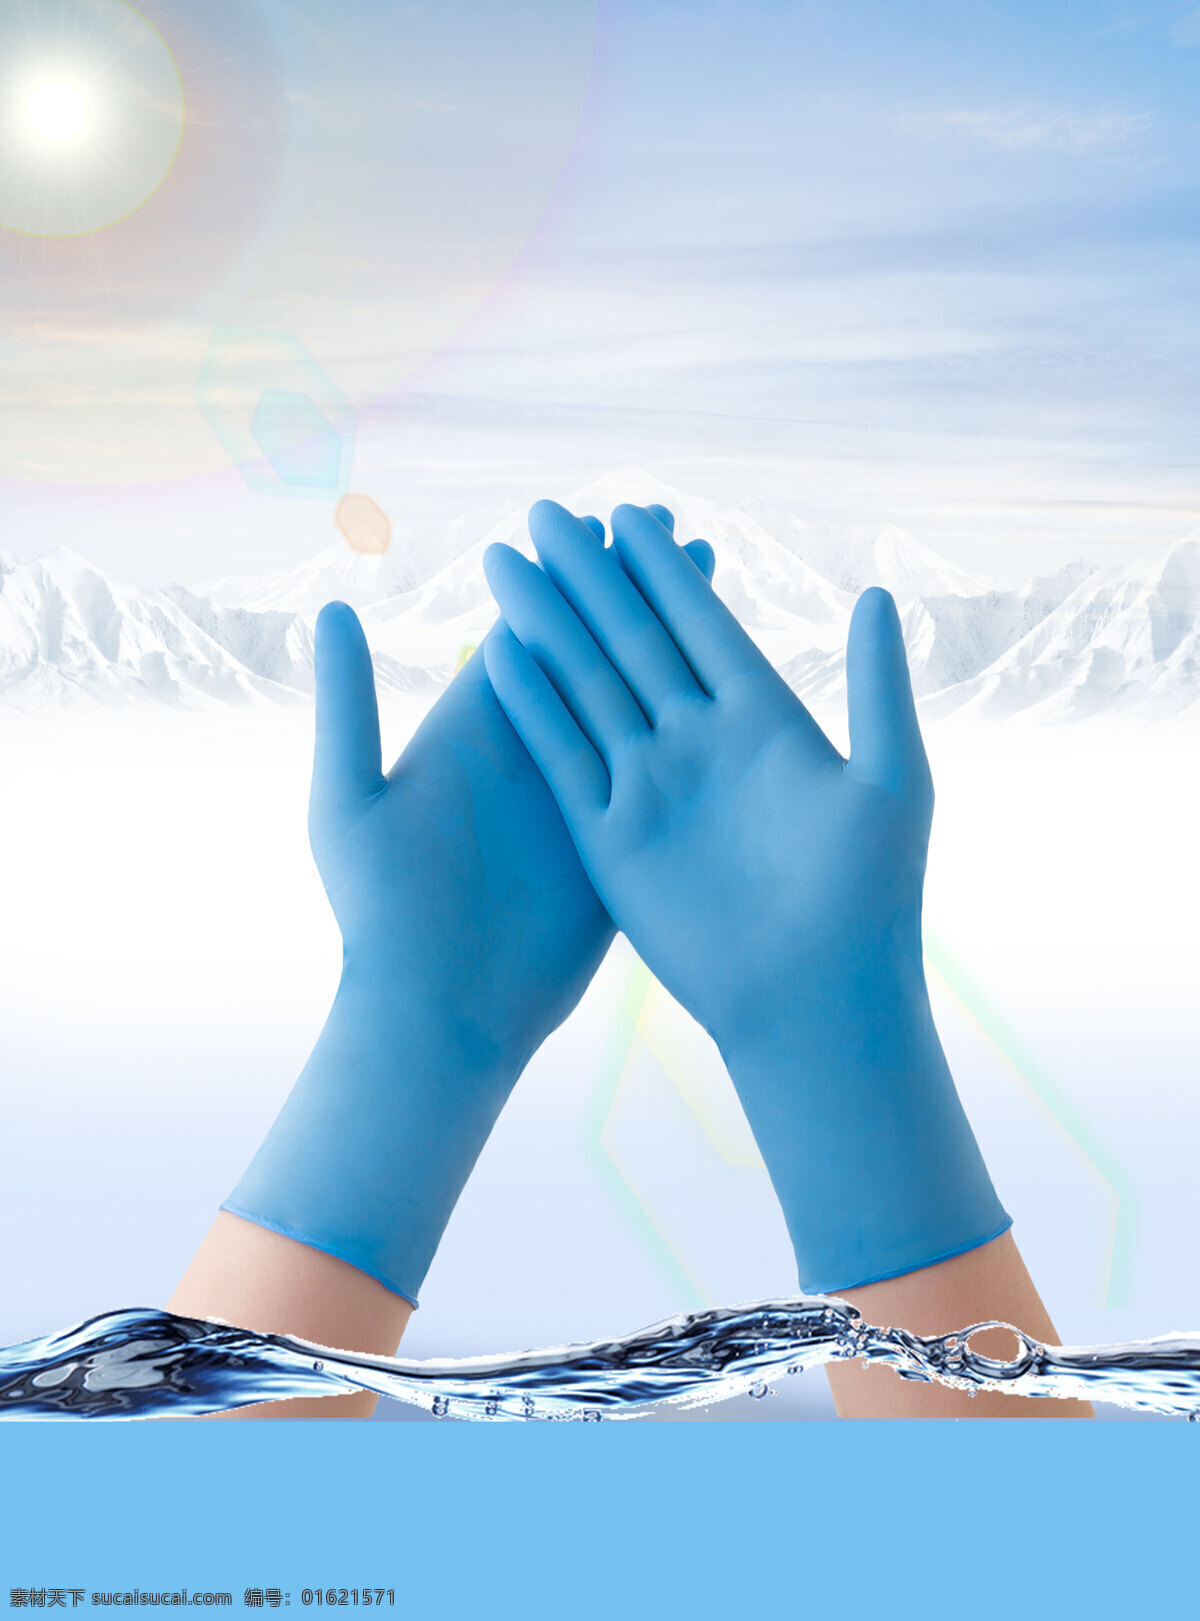 蓝色 医用 手套 背景 小清新 阳光 雪峰 水波 纯净 医用手套 海报 广告